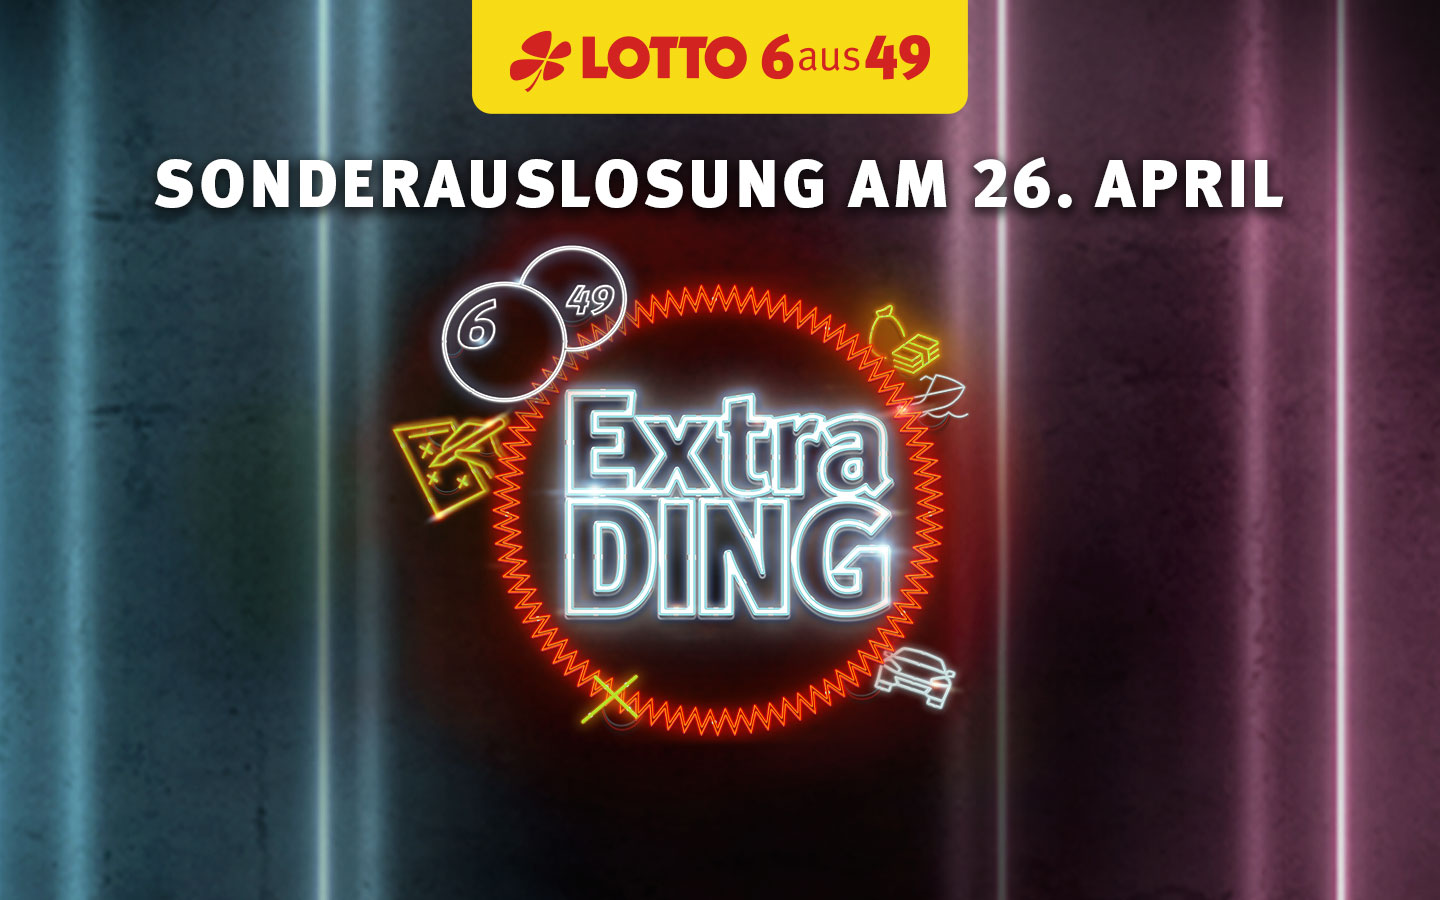 LOTTO 6aus49 Sonderauslosung ExtraDING am 26.04.2023 - Extra-Chance auf 35€ mit jedem Spielauftrag.